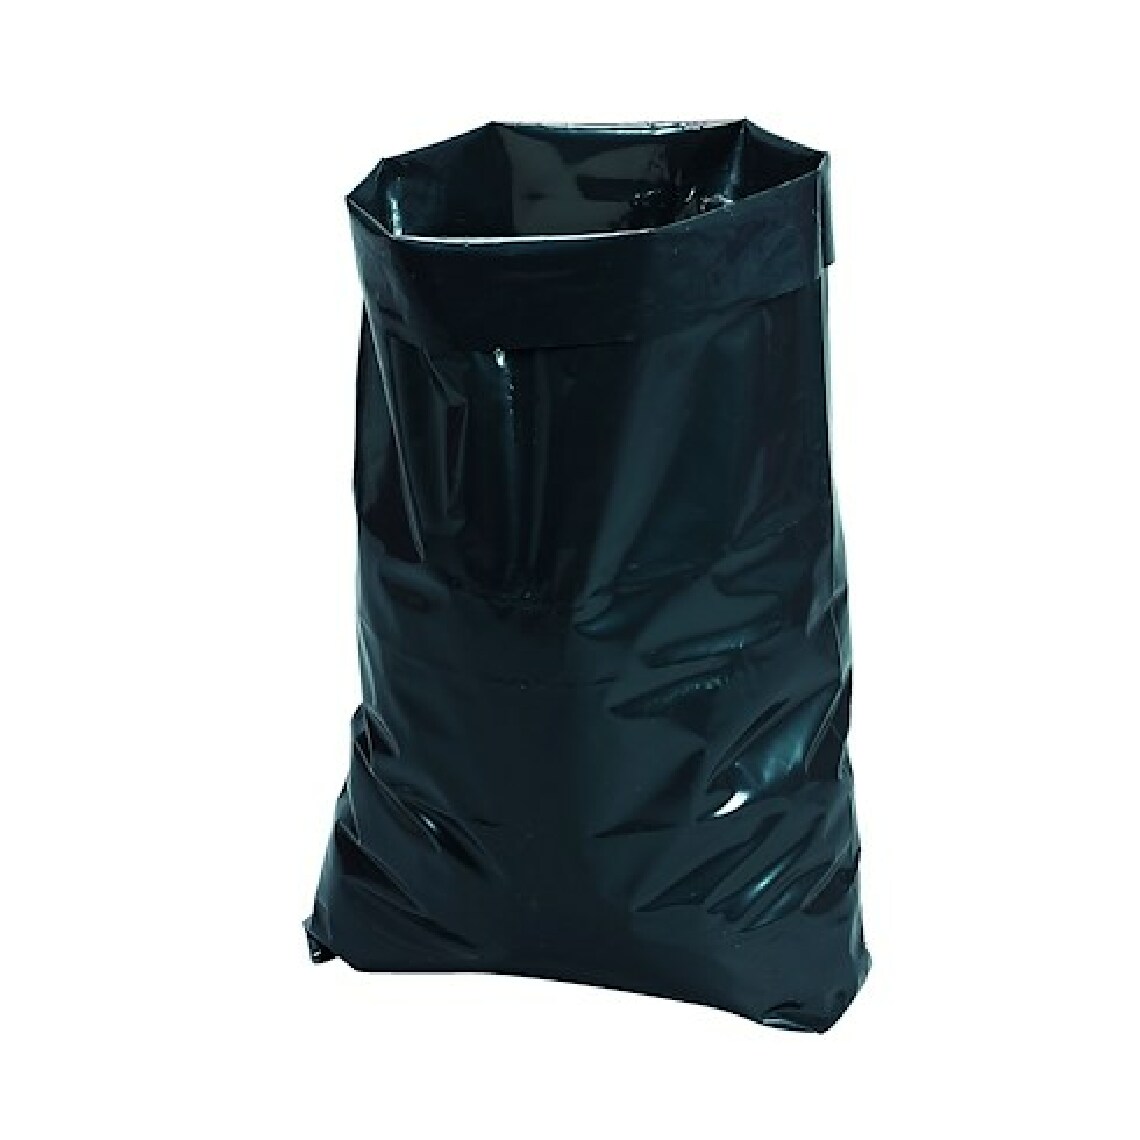 Jm Plast - Sac poubelle 50 litres gravats - carton de 50 - Entretien intérieur